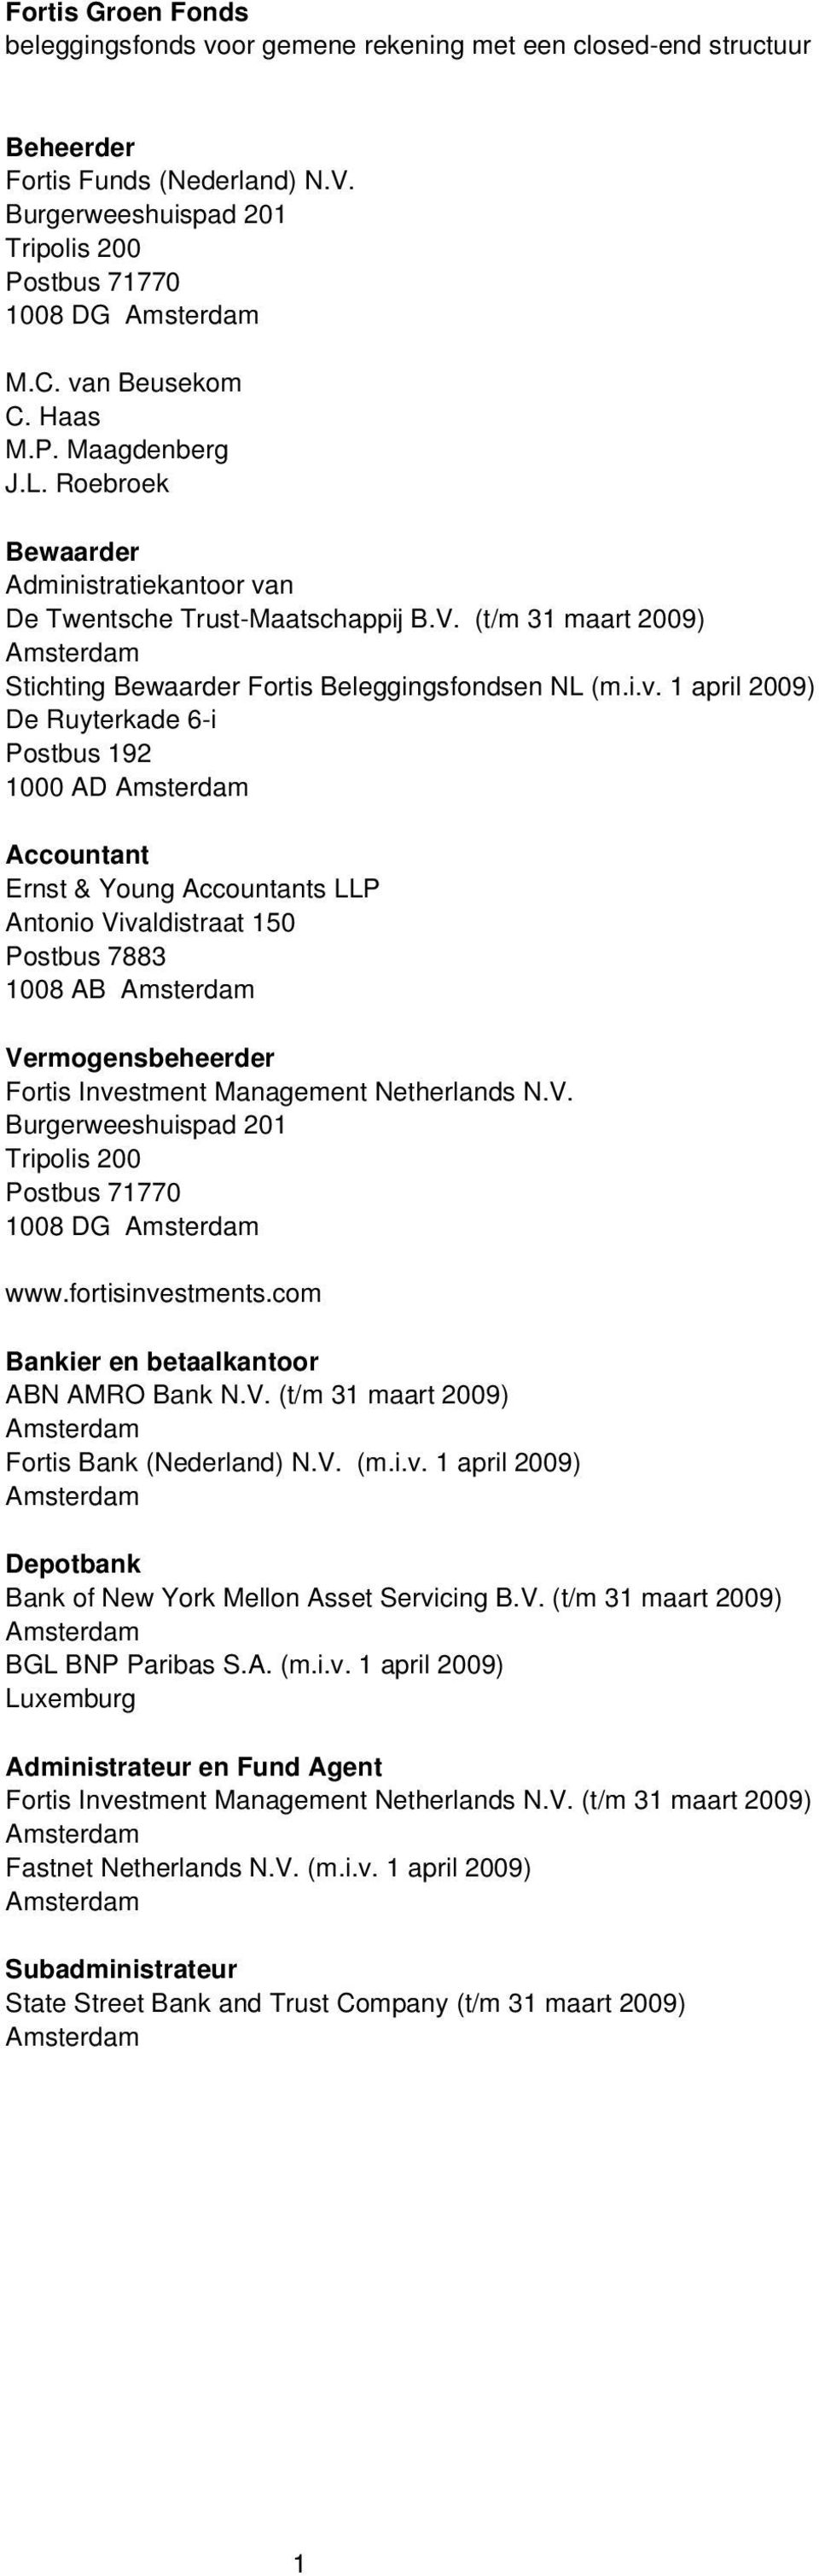 (t/m 31 maart 2009) Amsterdam Stichting Bewaarder Fortis Beleggingsfondsen NL (m.i.v.